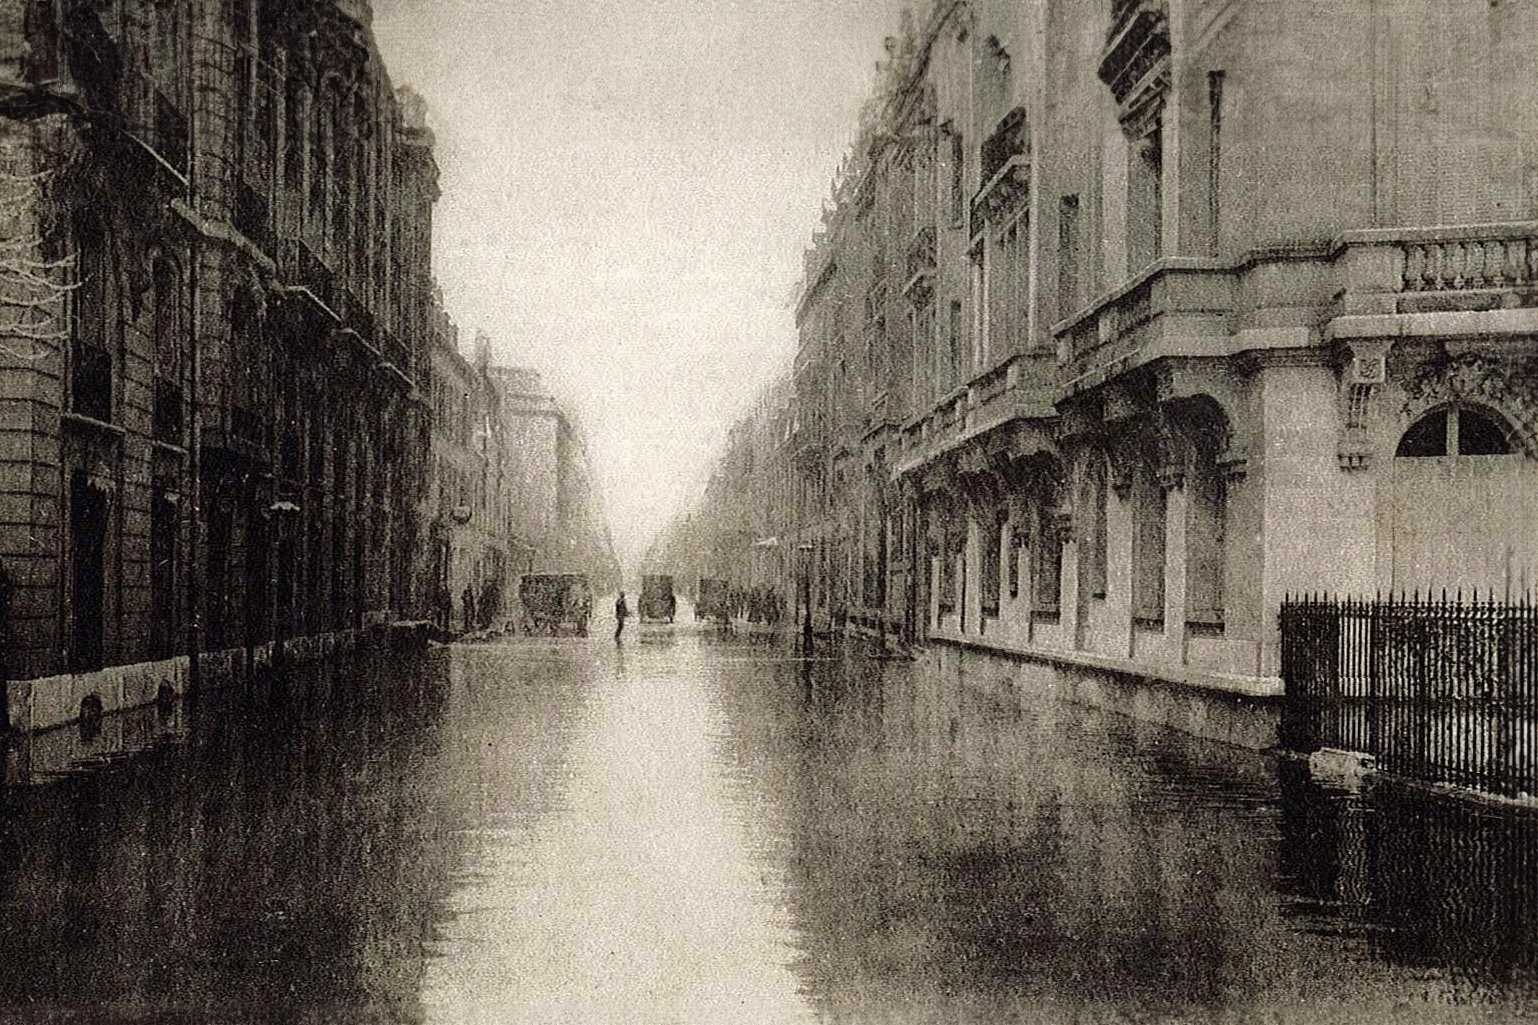 Rue de Lille in January 1910